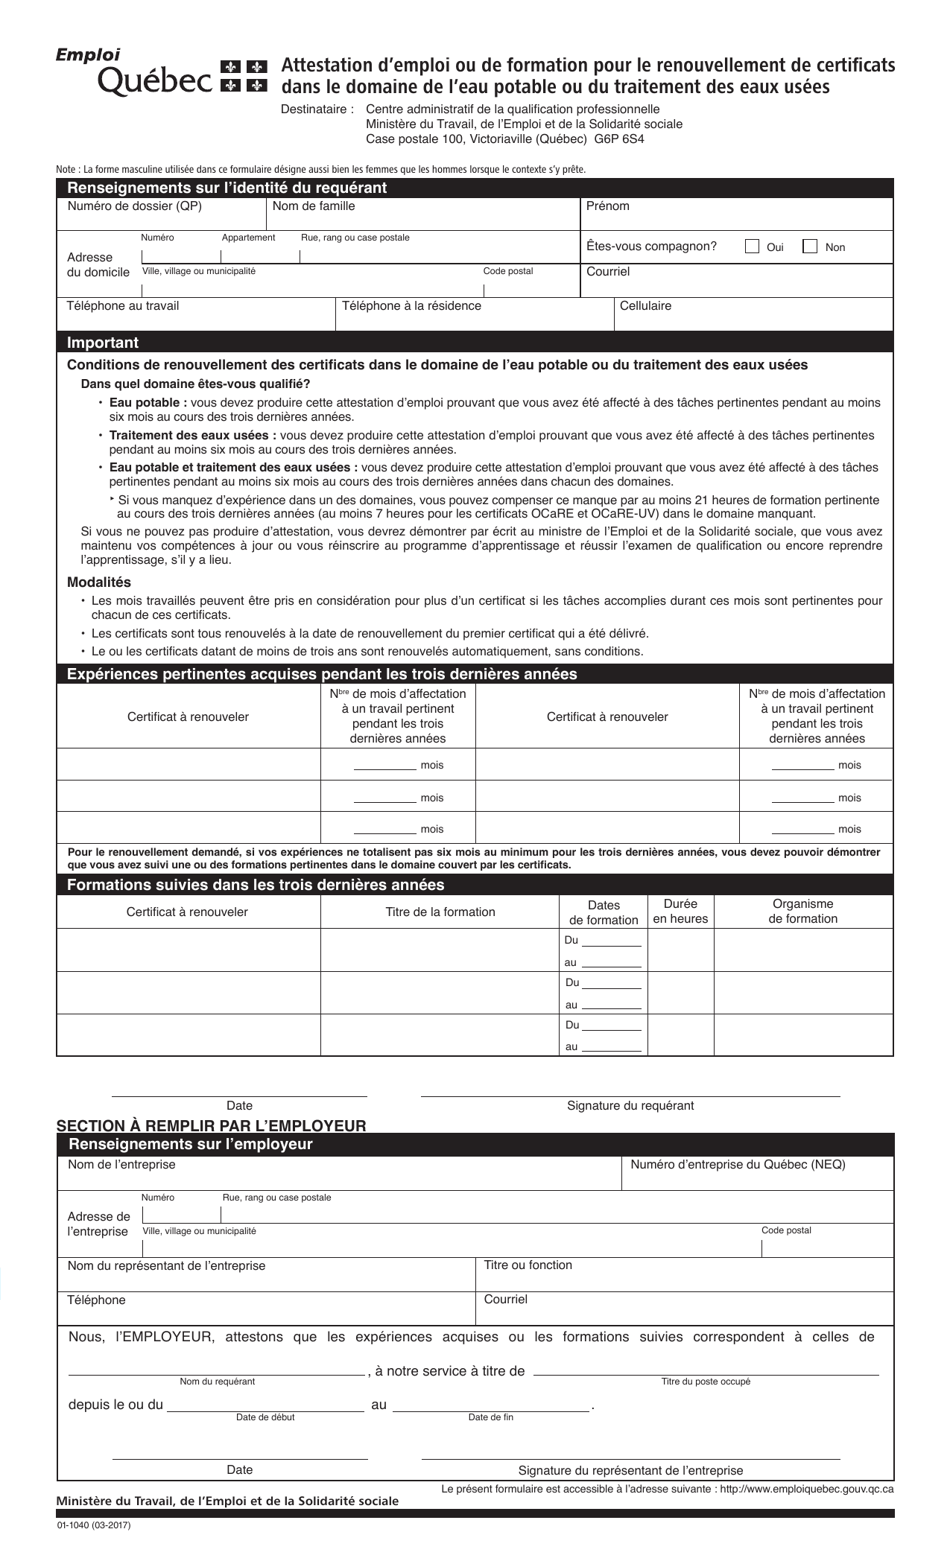 Forme 01-1040 Attestation Demploi Ou De Formation Pour Le Renouvellement De Certificats - Quebec, Canada (French), Page 1